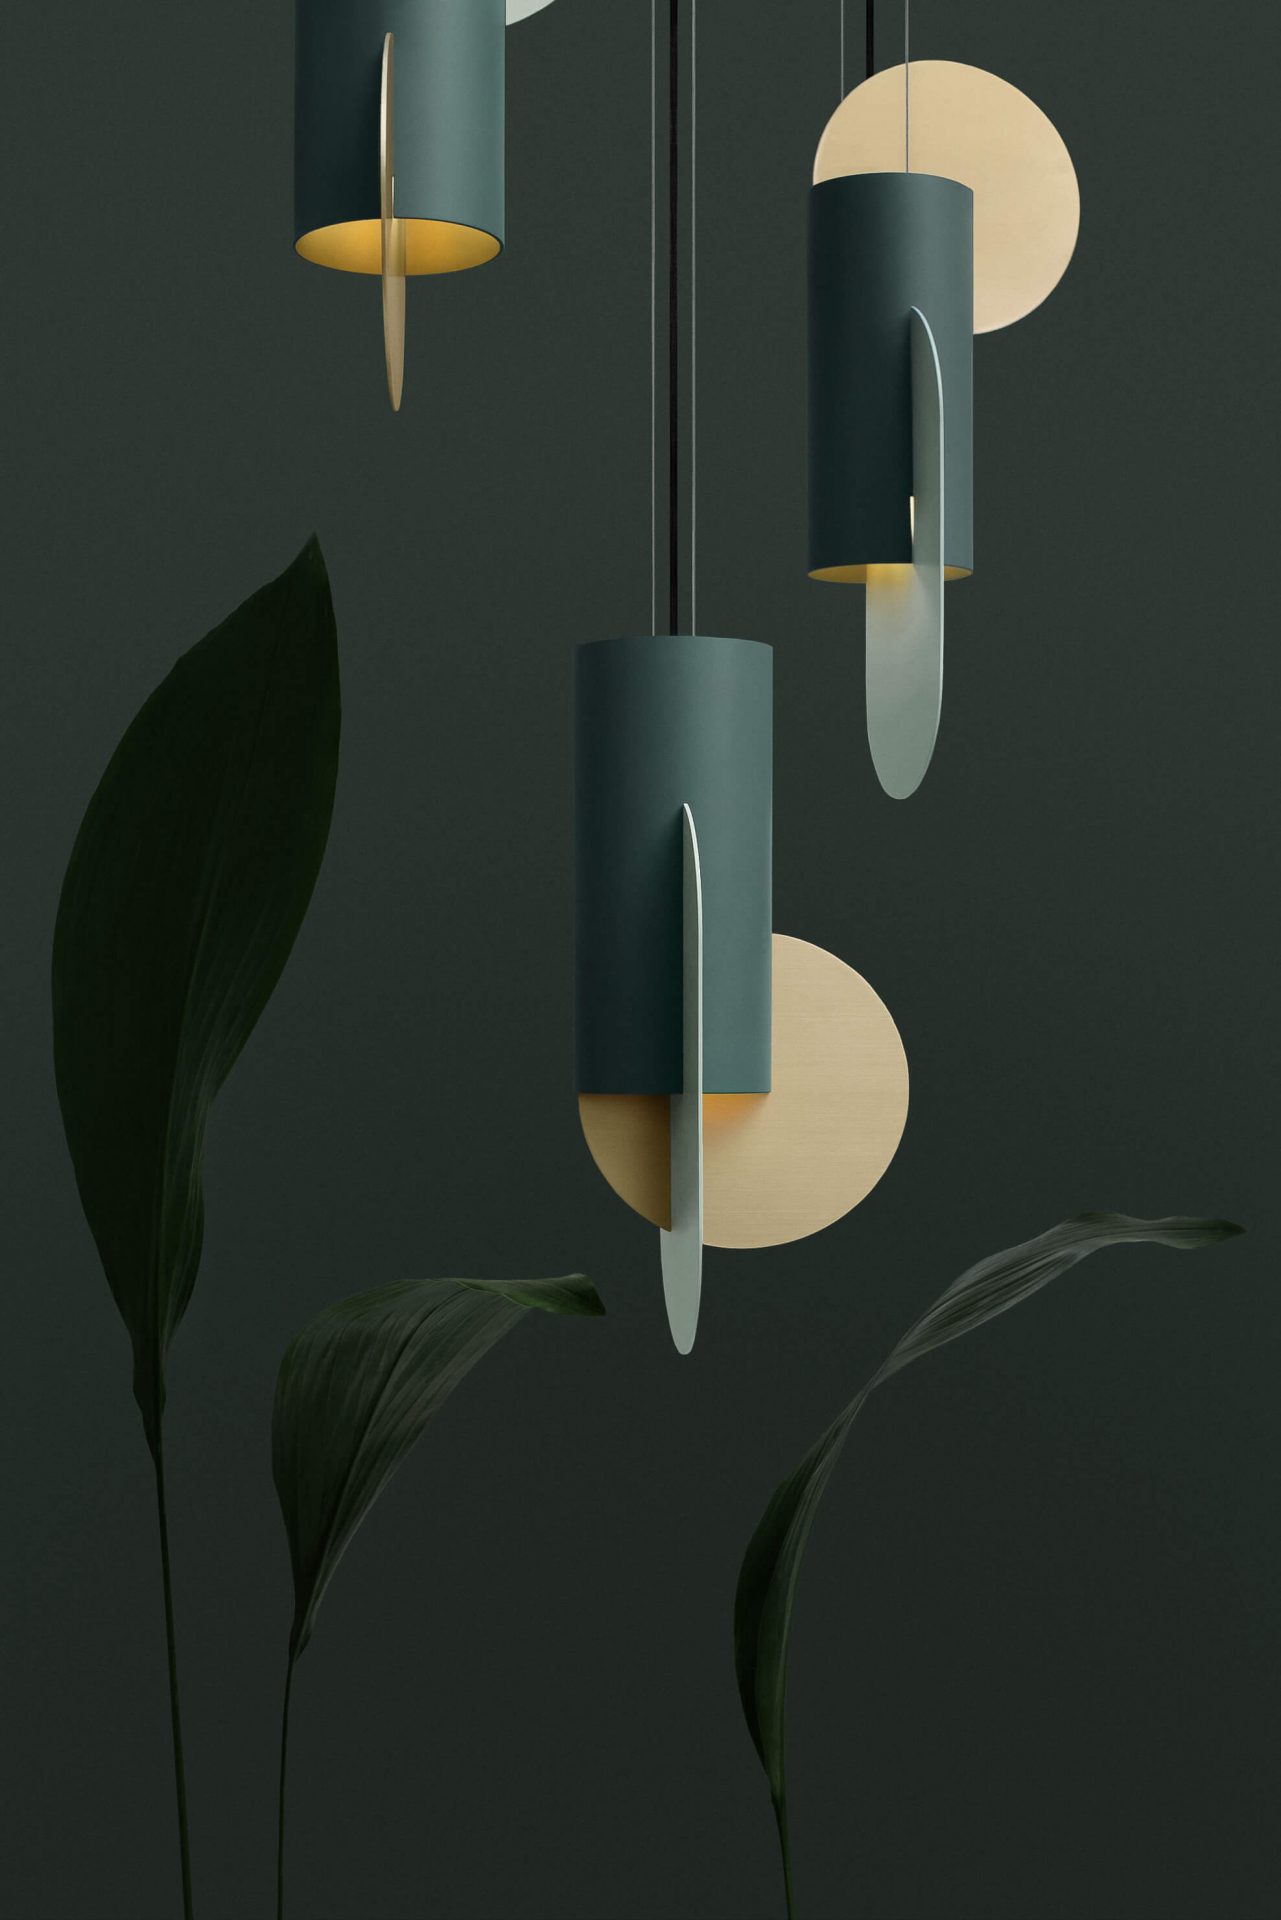 Solokova Design - Suprematic lamps